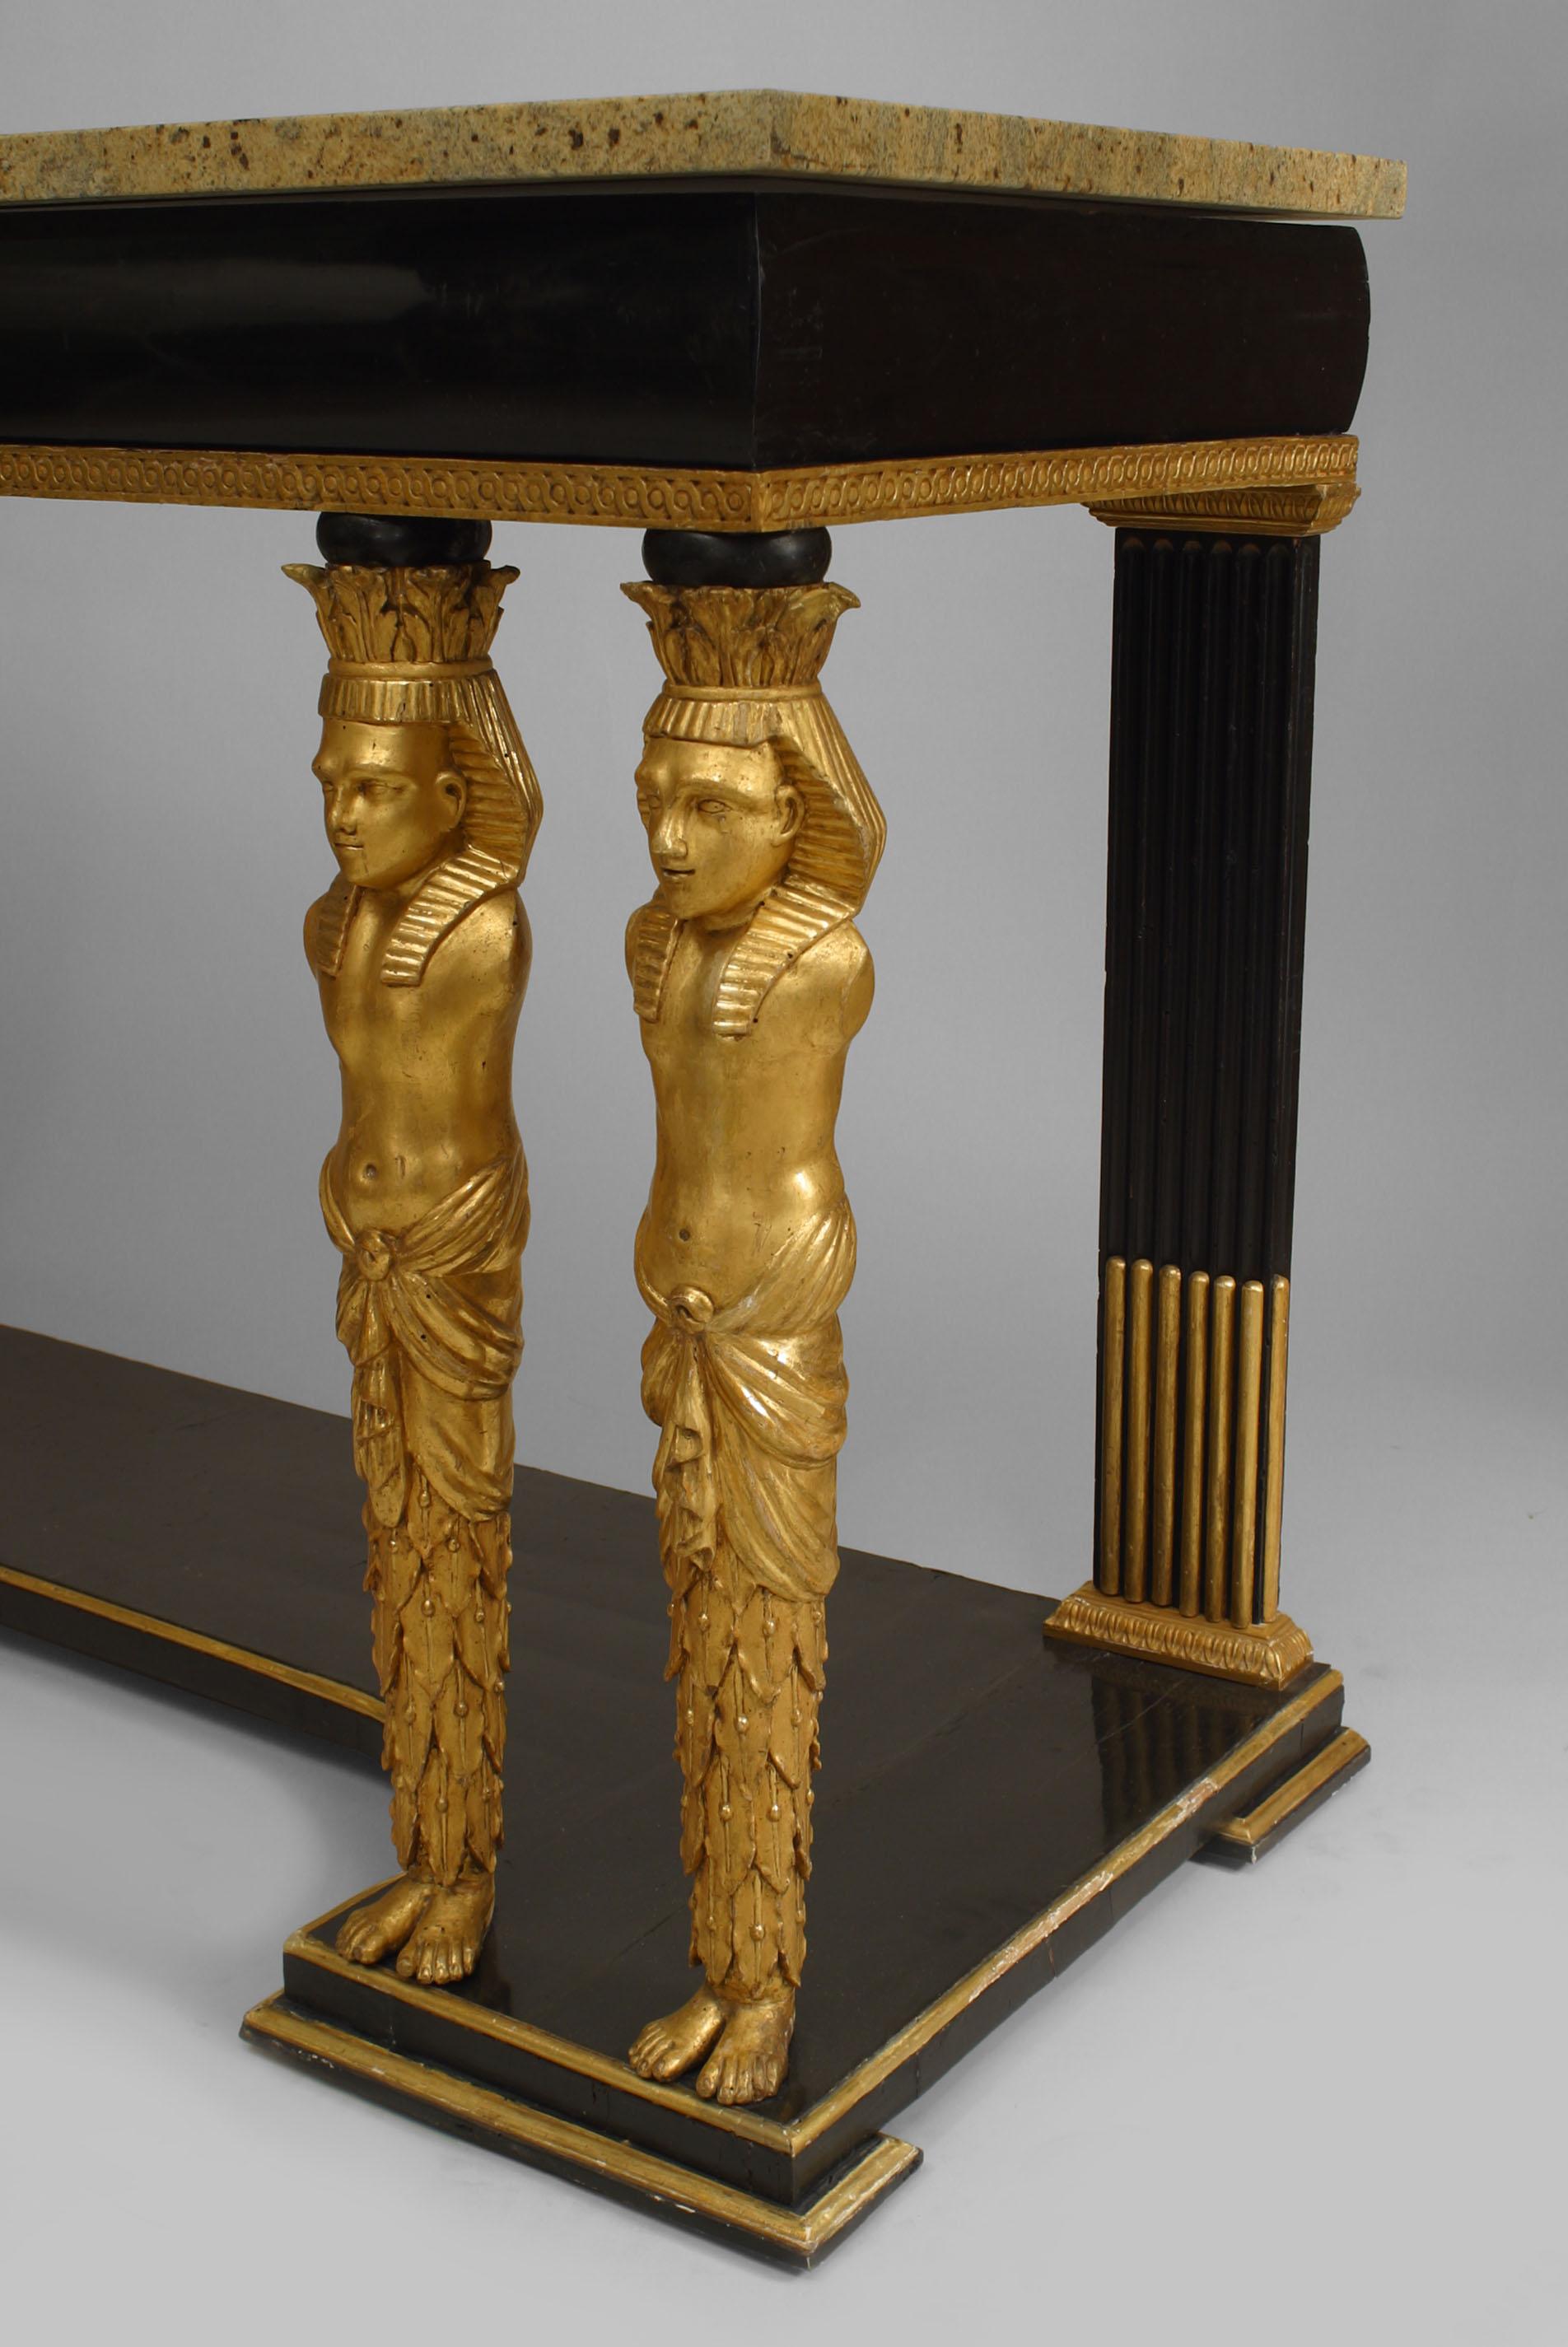 Table console de style Empire autrichien (vers 1800), ébénisée et dorée, avec 4 supports frontaux sculptés de figures égyptiennes classiques, sur une base à plate-forme avec un dessus en marbre.
